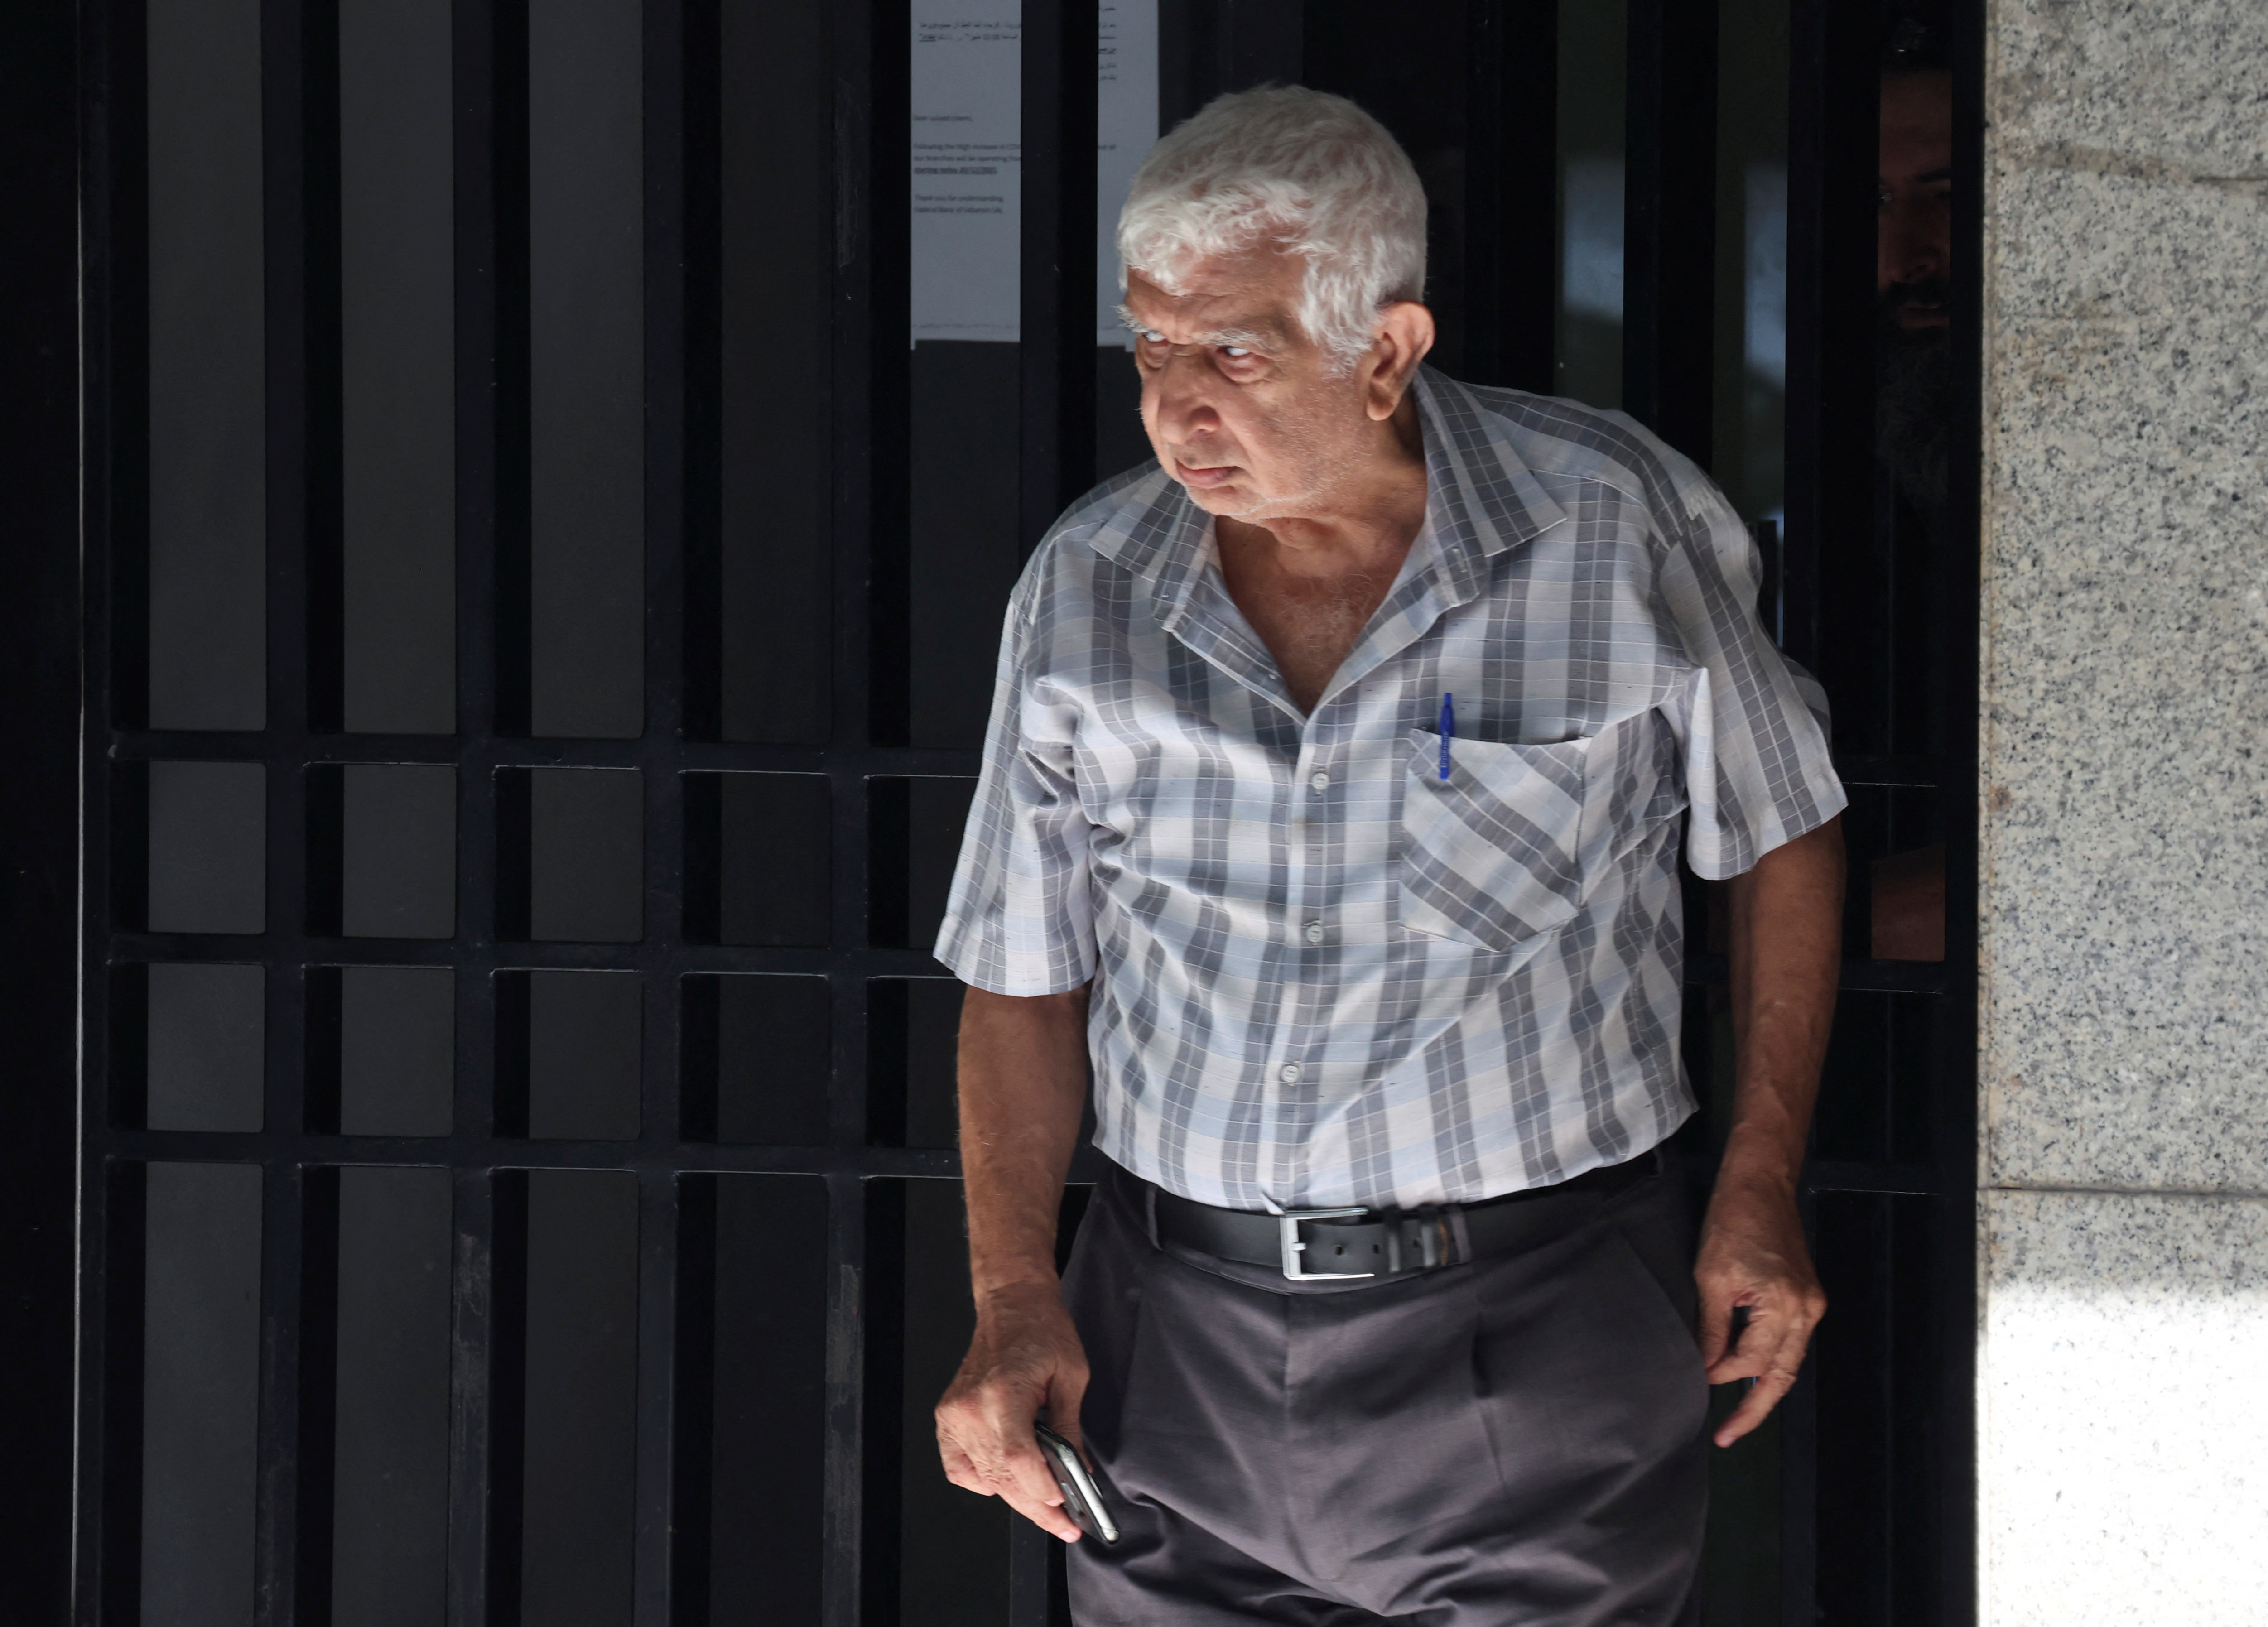 An elderly man leaves the bank (REUTERS / Mohamed Azakir)